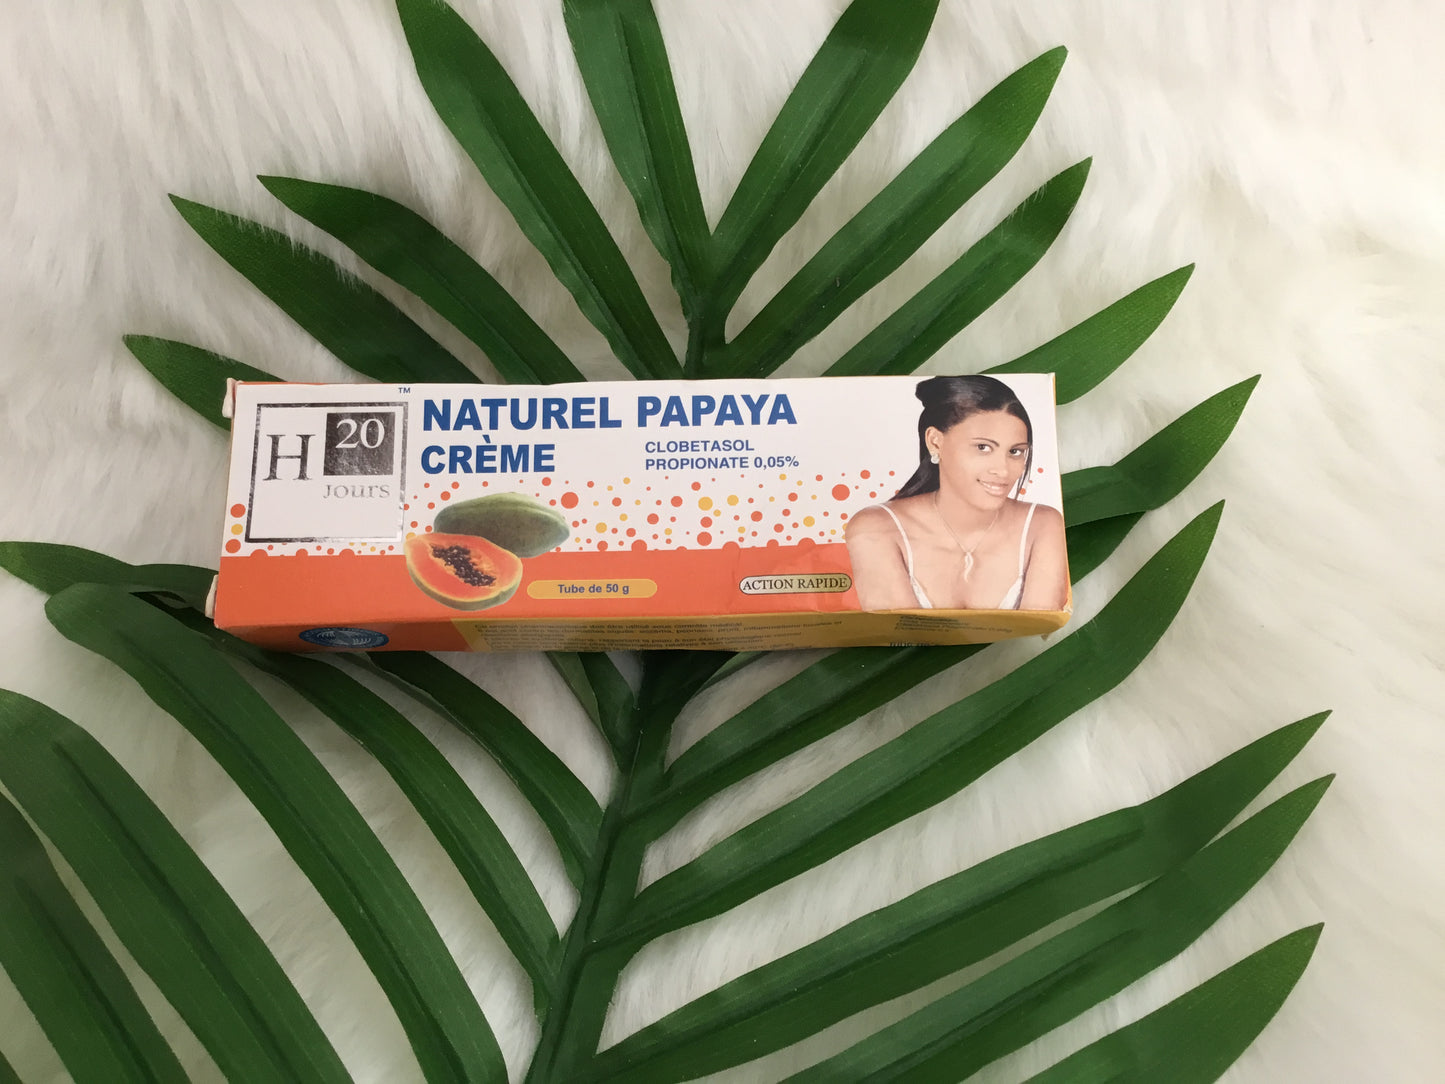 Natural Papaya cream H20